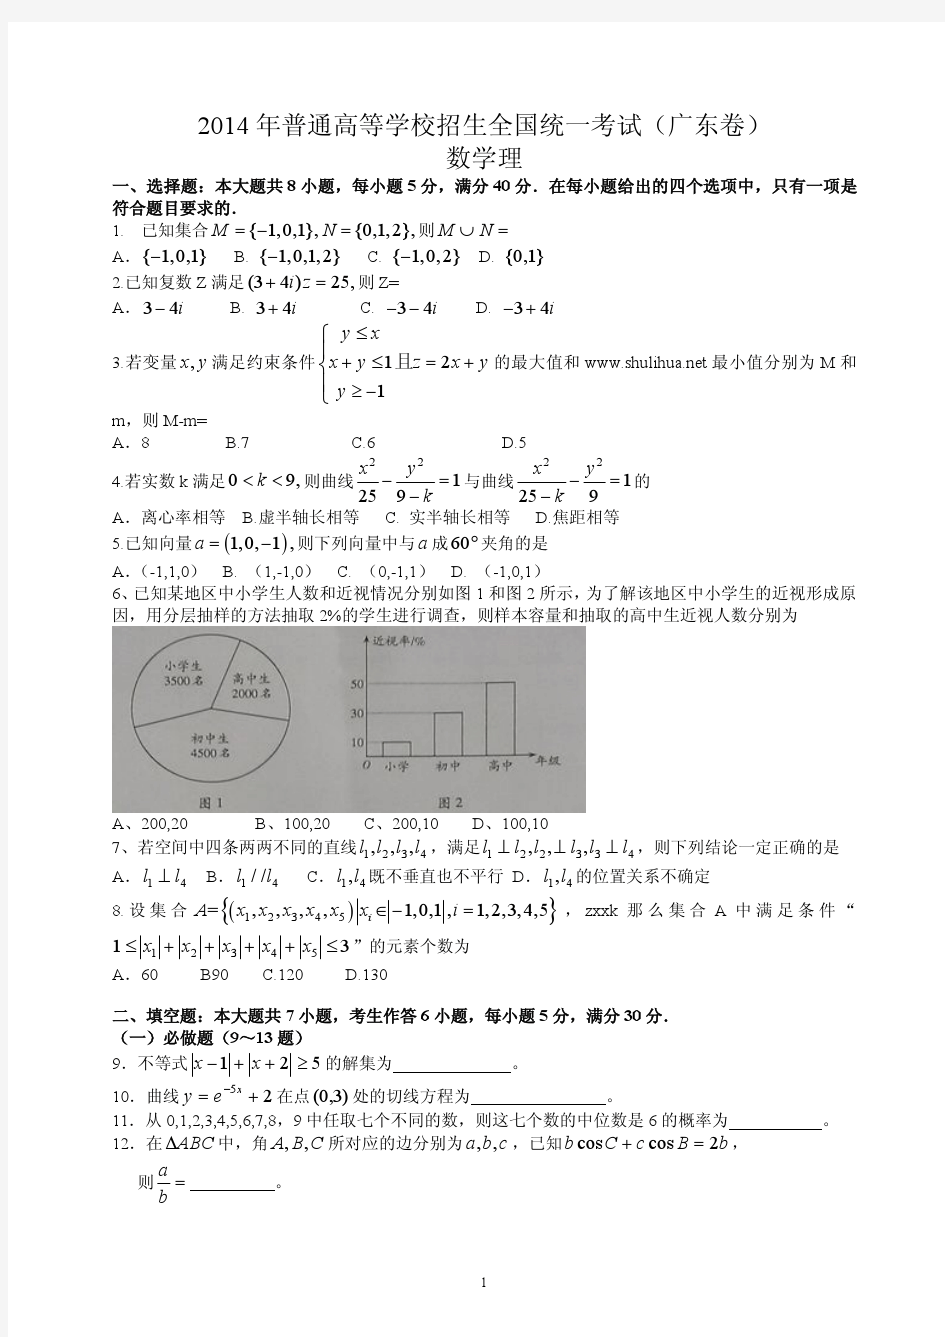 2014年广东高考数学理科真题及答案解析(内部文件)